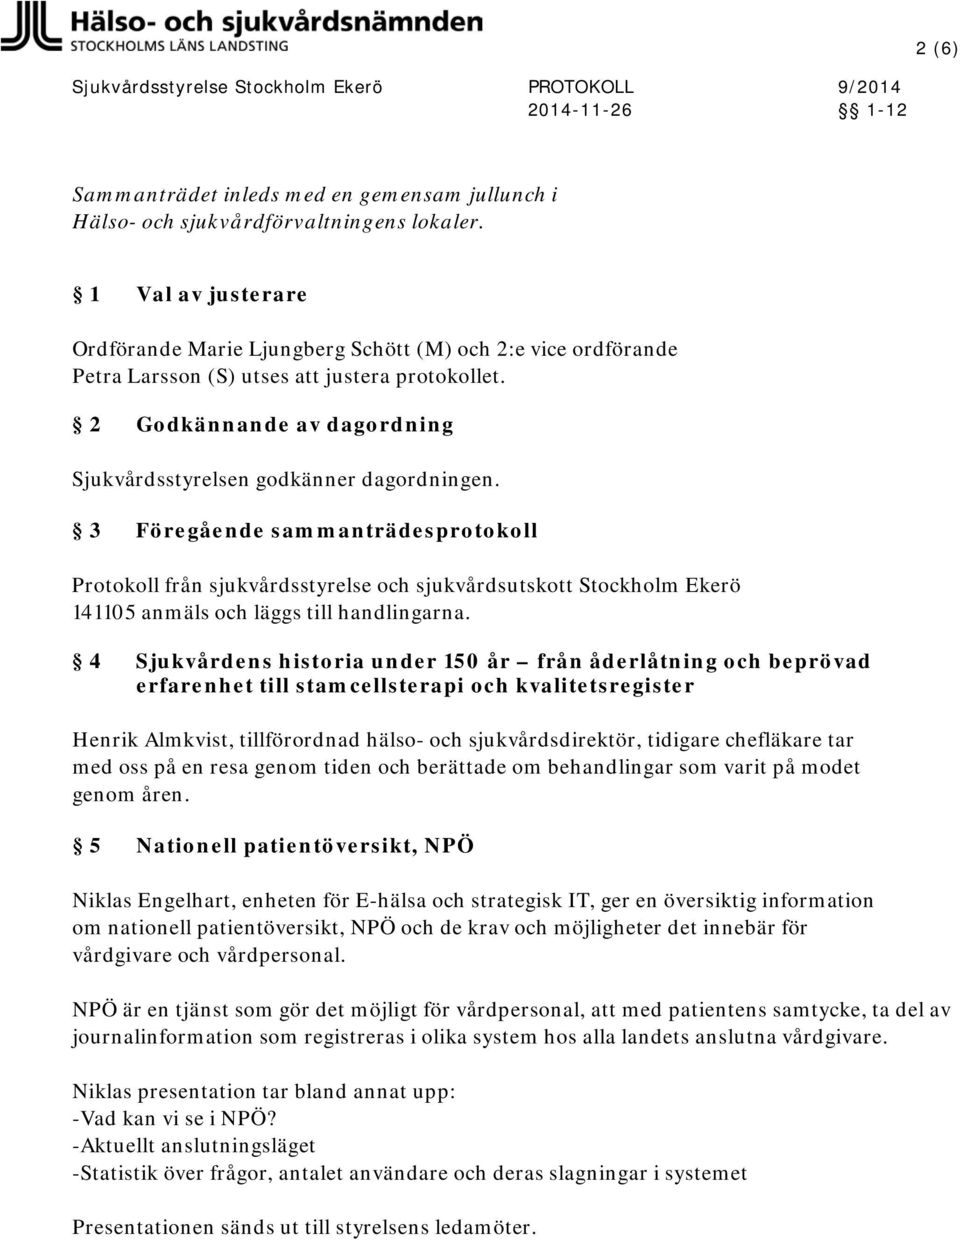 3 Föregående sammanträdesprotokoll Protokoll från sjukvårdsstyrelse och sjukvårdsutskott Stockholm Ekerö 141105 anmäls och läggs till handlingarna.